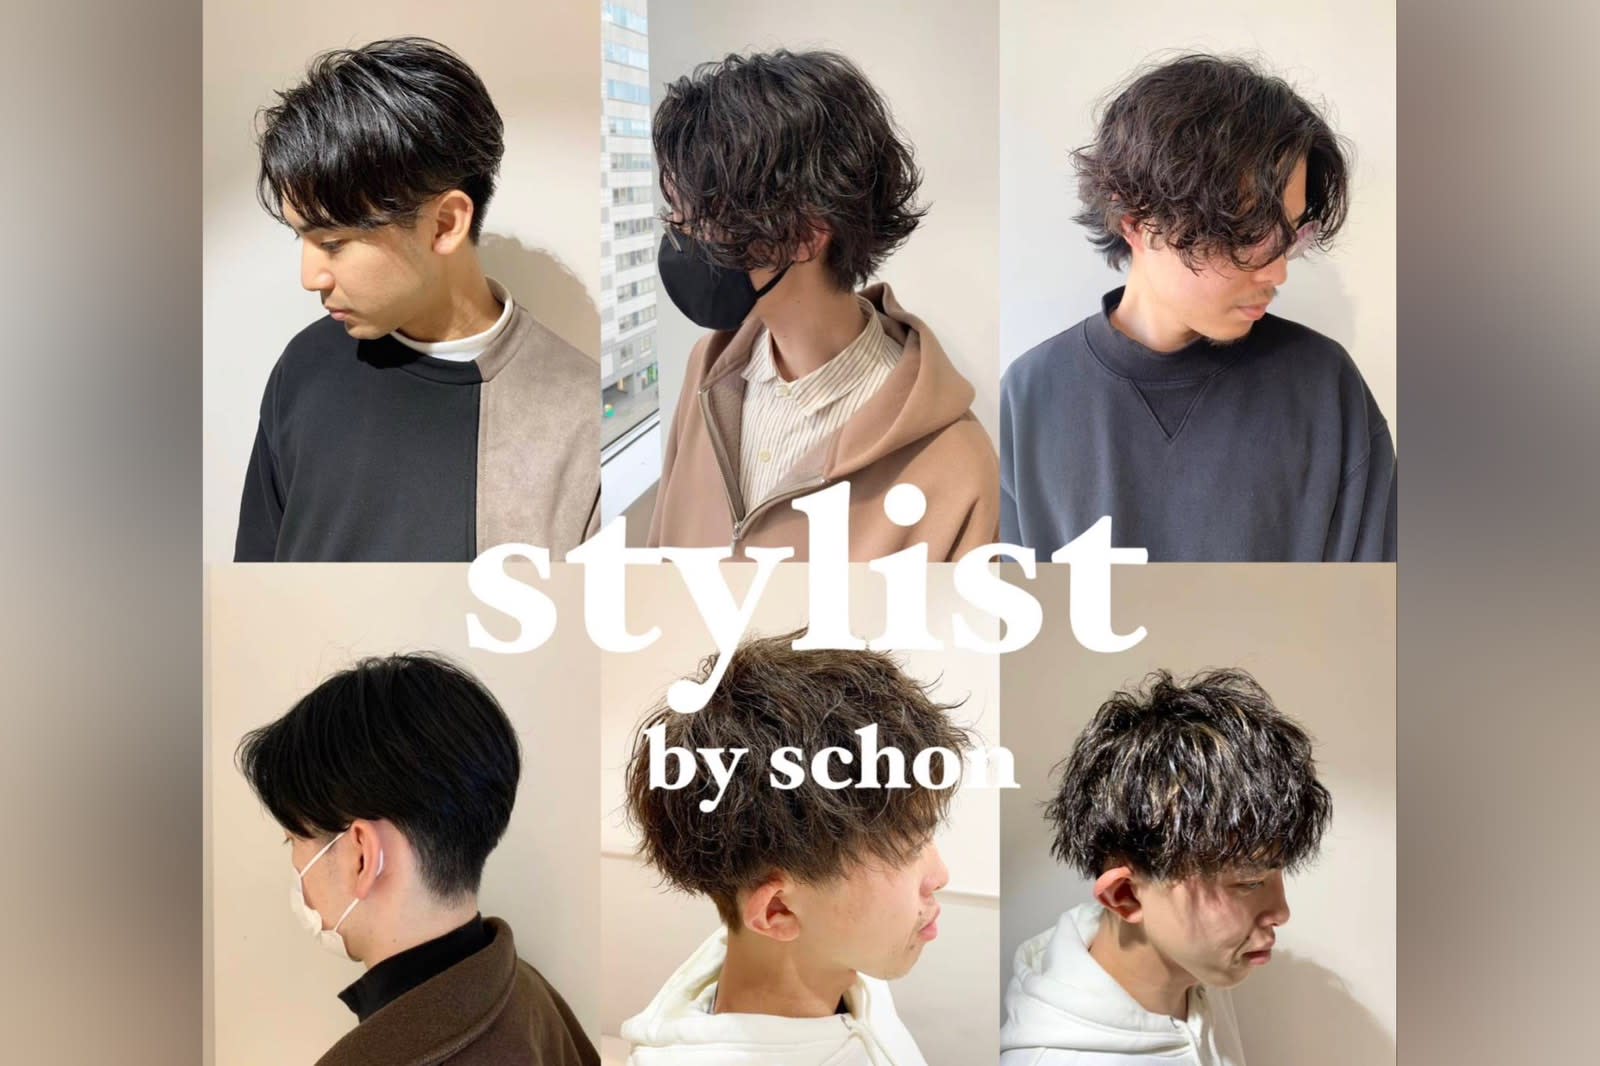 【シェアサロン】stylist hiroのアイキャッチ画像